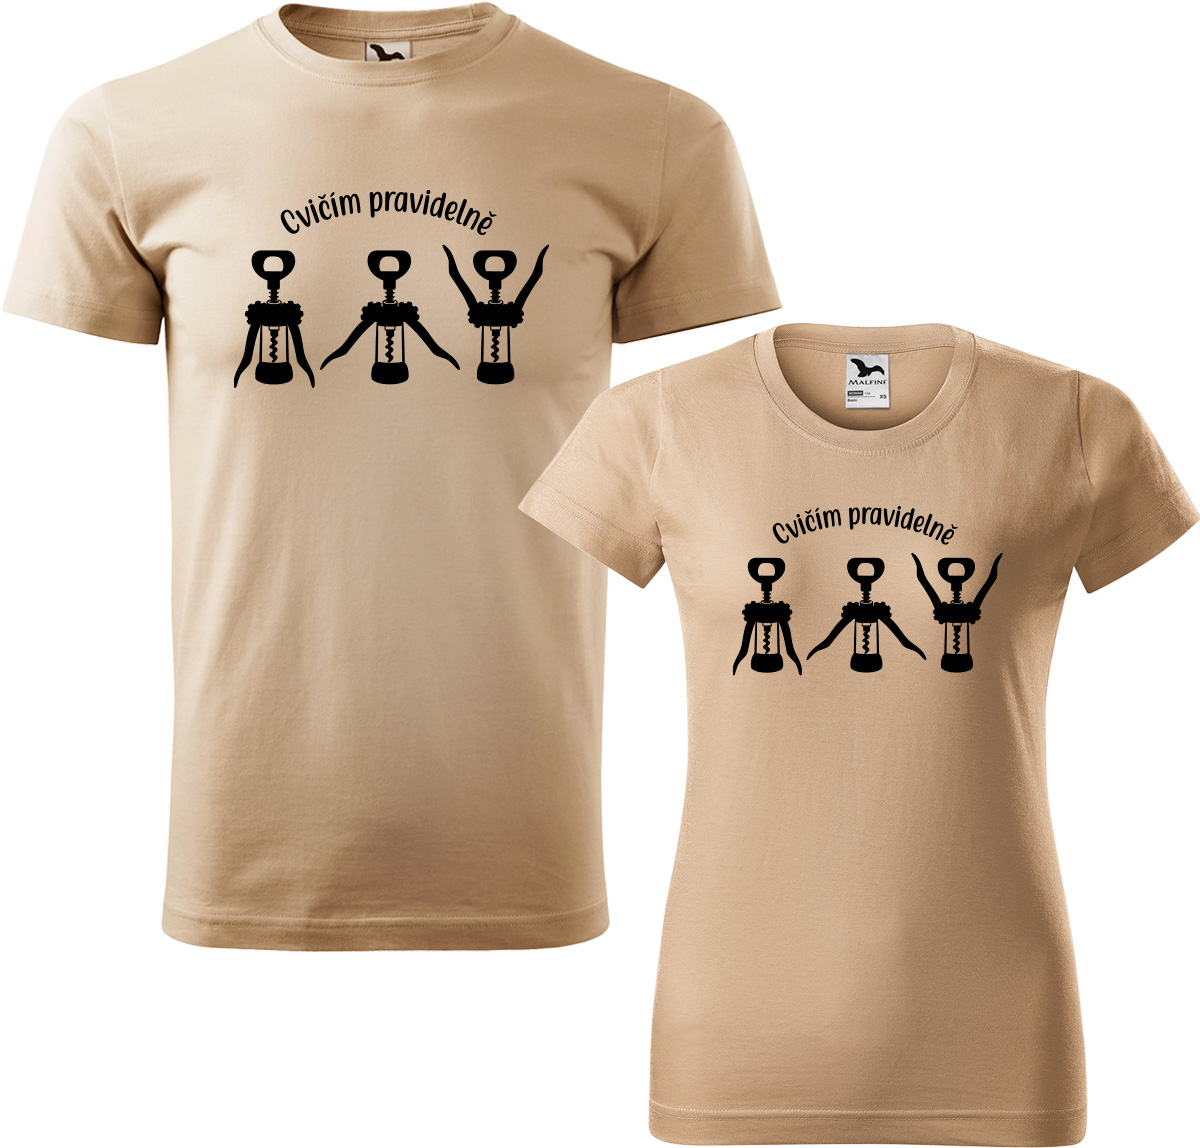 Trička pro páry - Cvičím pravidelně Barva: Písková (08), Velikost dámské tričko: L, Velikost pánské tričko: XL